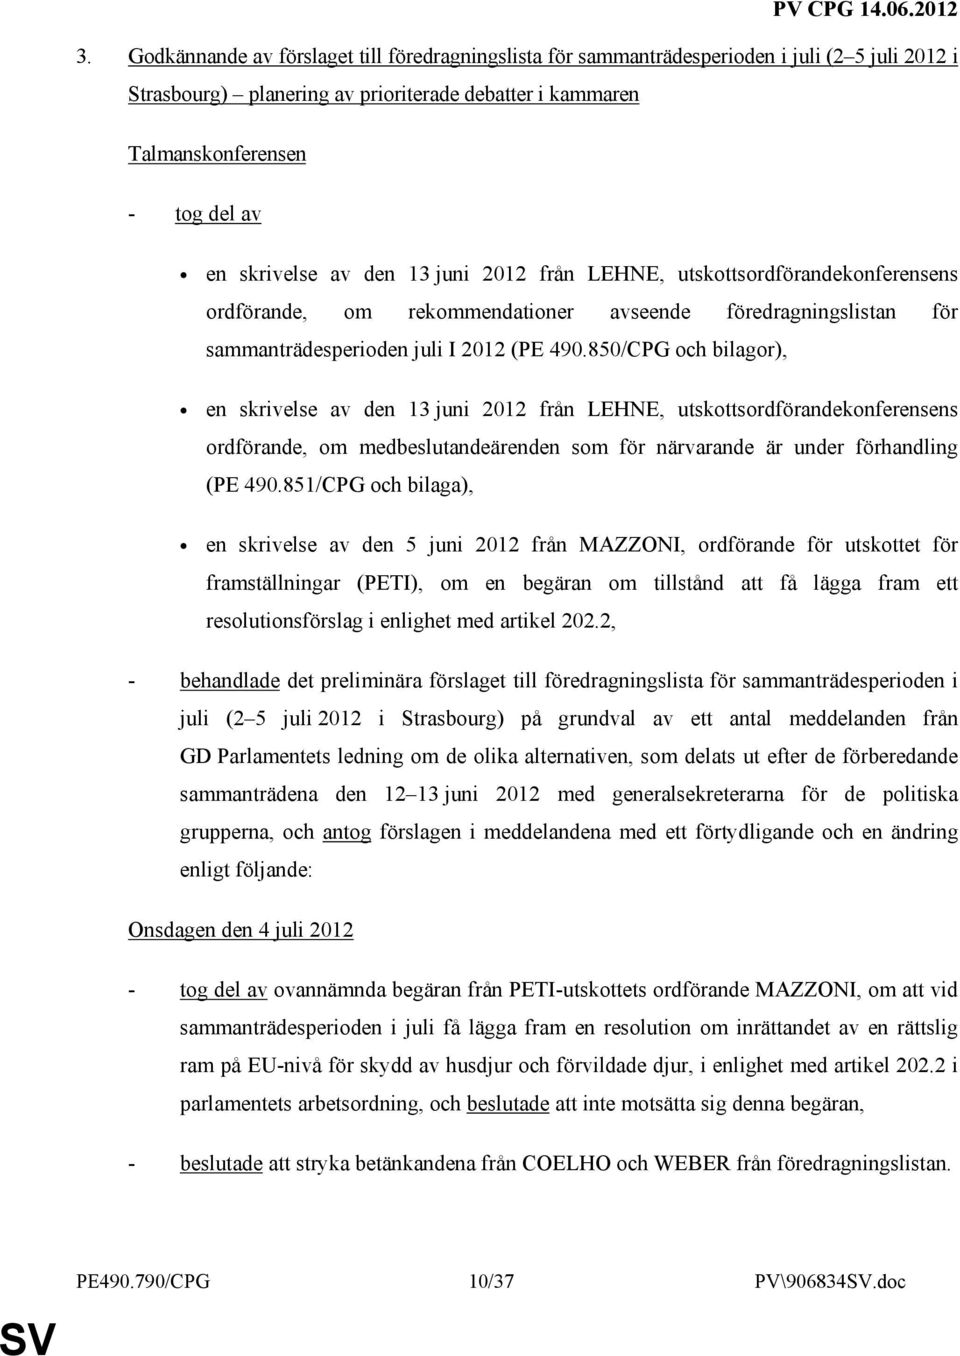 850/CPG och bilagor), en skrivelse av den 13 juni 2012 från LEHNE, utskottsordförandekonferensens ordförande, om medbeslutandeärenden som för närvarande är under förhandling (PE 490.